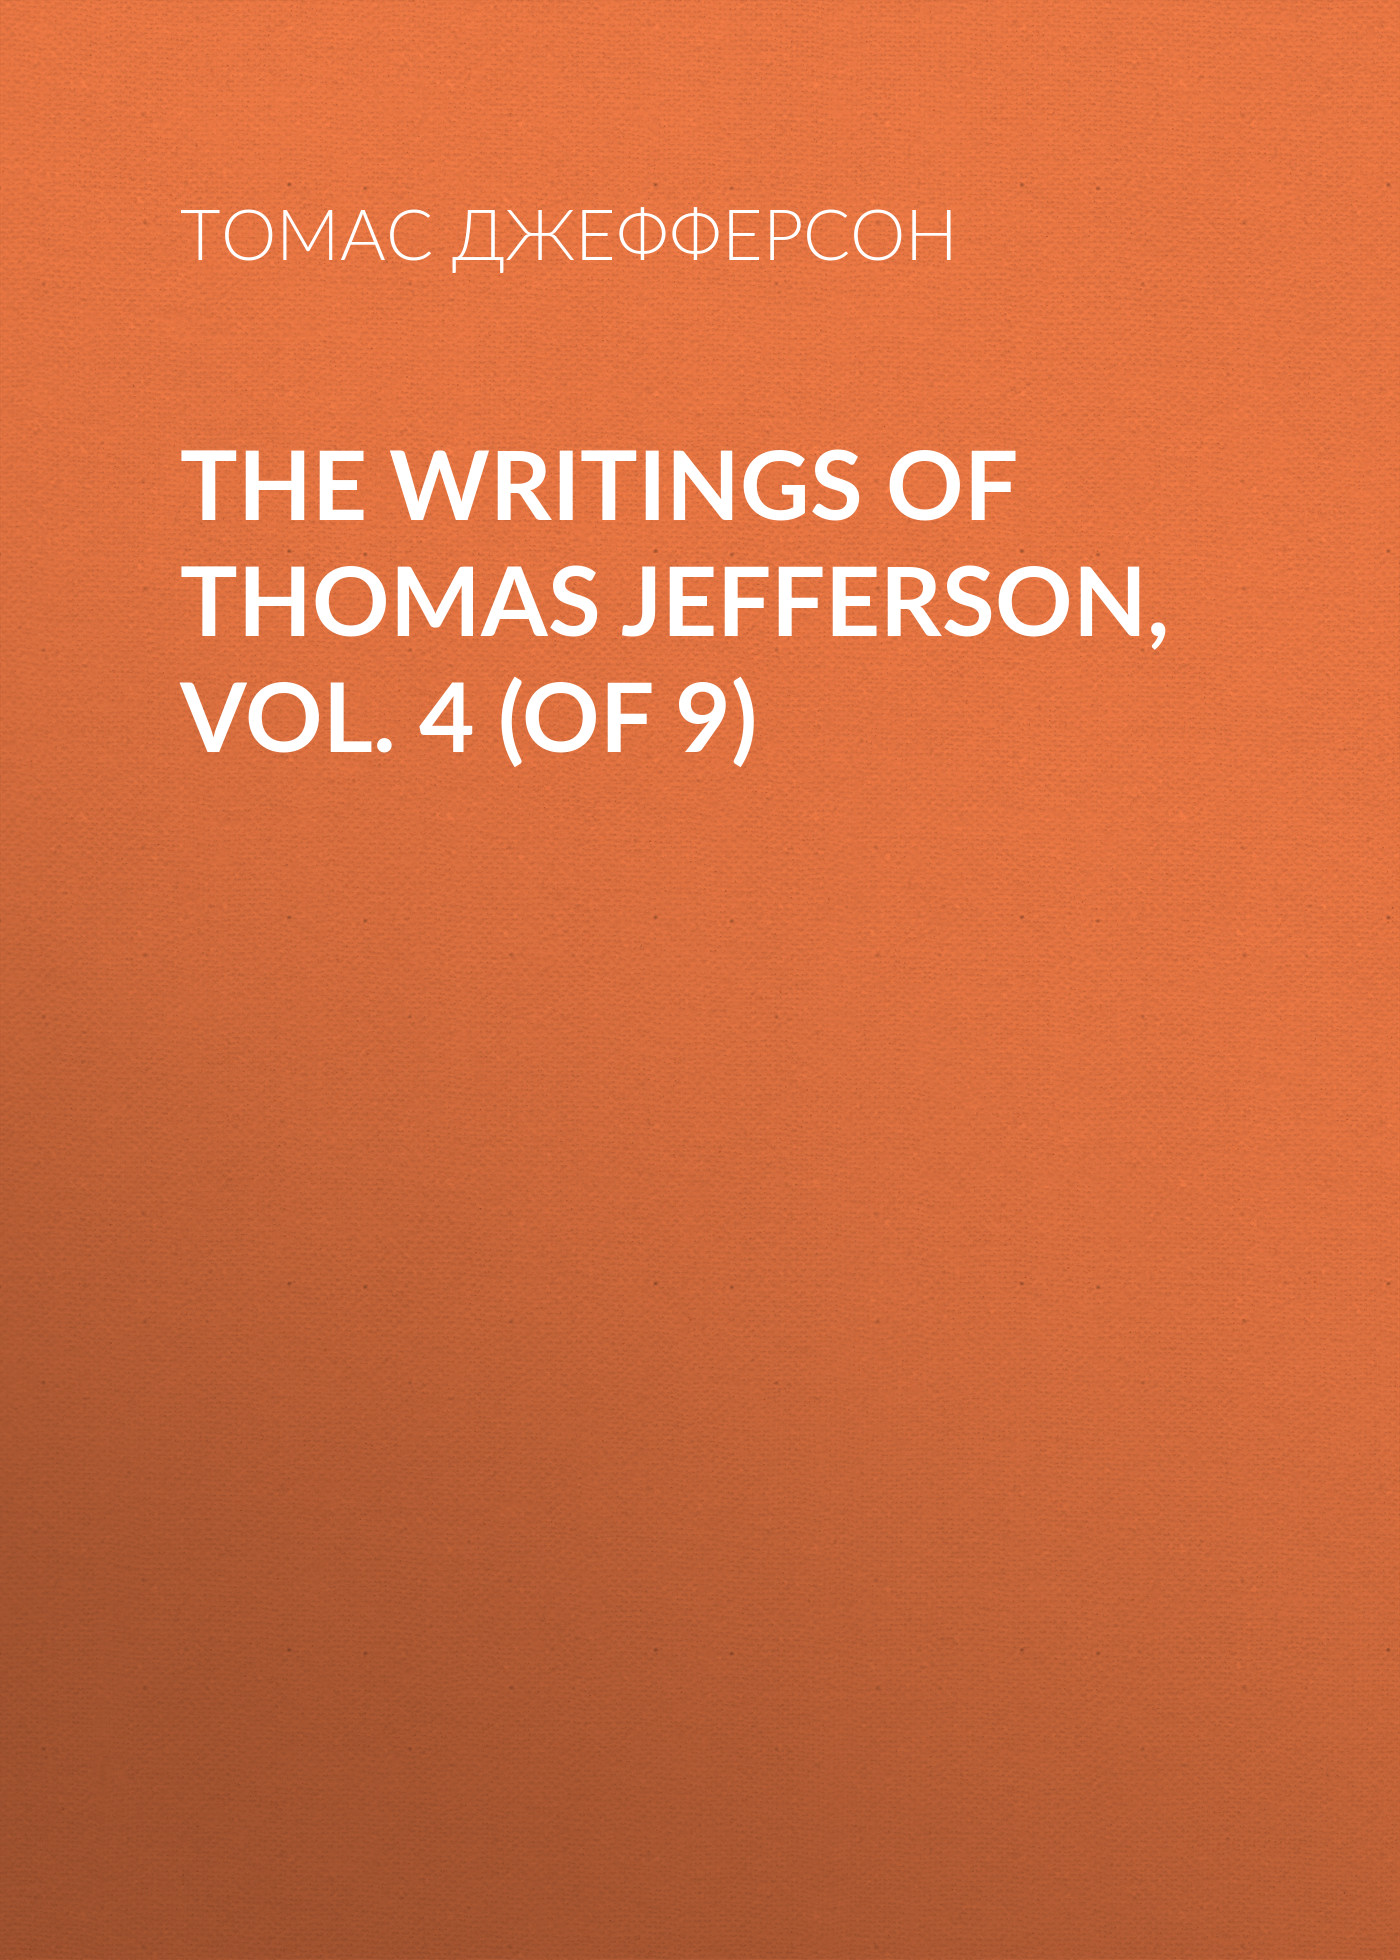 Книга The Writings of Thomas Jefferson, Vol. 4 (of 9) из серии , созданная Томас Джефферсон, может относится к жанру Биографии и Мемуары, Зарубежная старинная литература. Стоимость электронной книги The Writings of Thomas Jefferson, Vol. 4 (of 9) с идентификатором 34839190 составляет 0 руб.